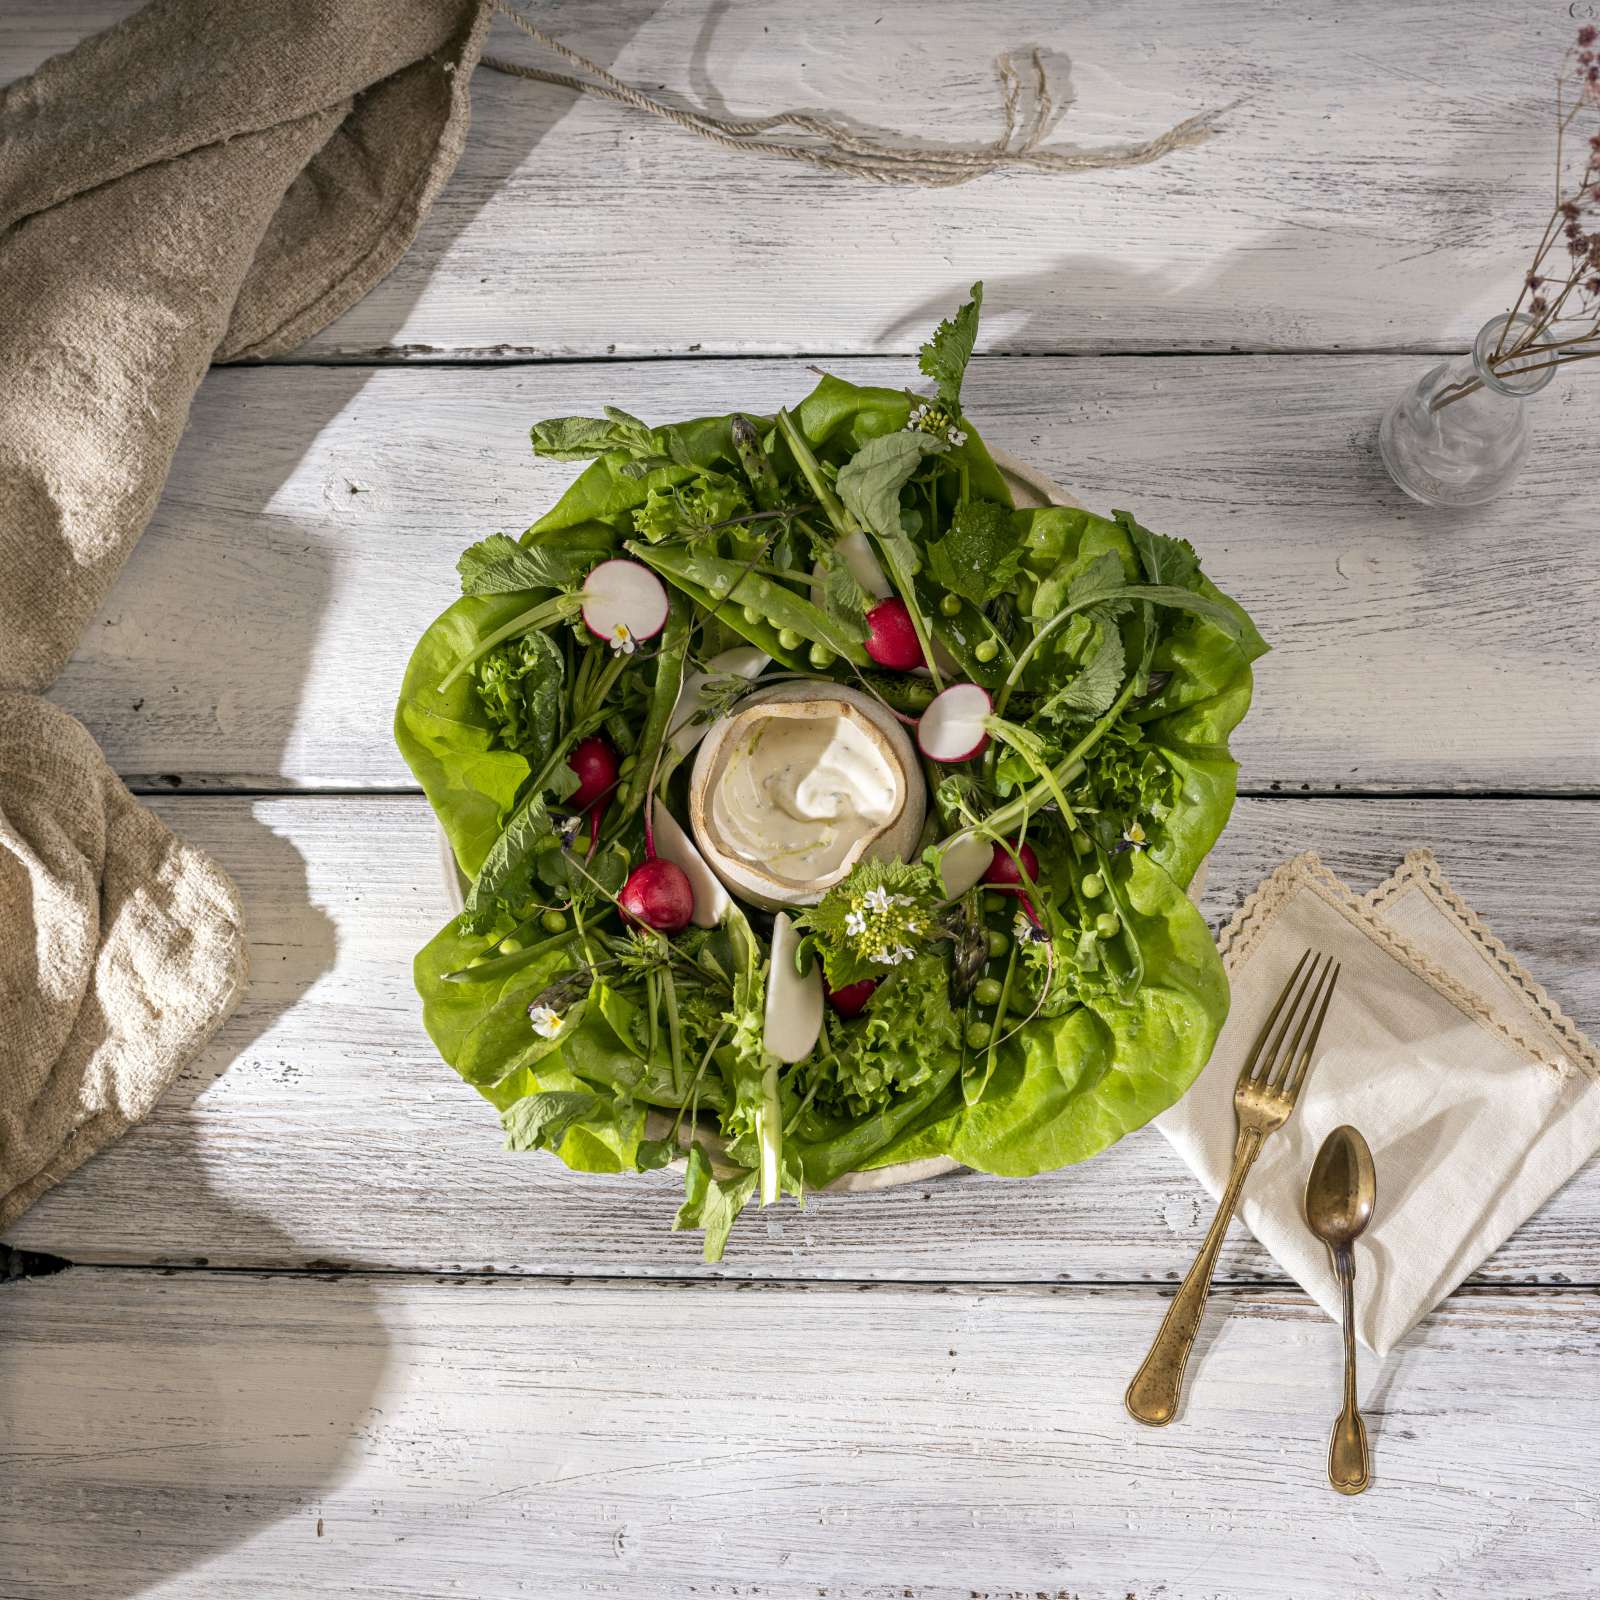 Suomen kesän maistuvimmat salaatit ja kasvikset ovat upeita sellaisenaan ja lempeän jogurtin kanssa tarjottuna ne toimivat mainiosti jaettavana alkuruokana pöydässä!